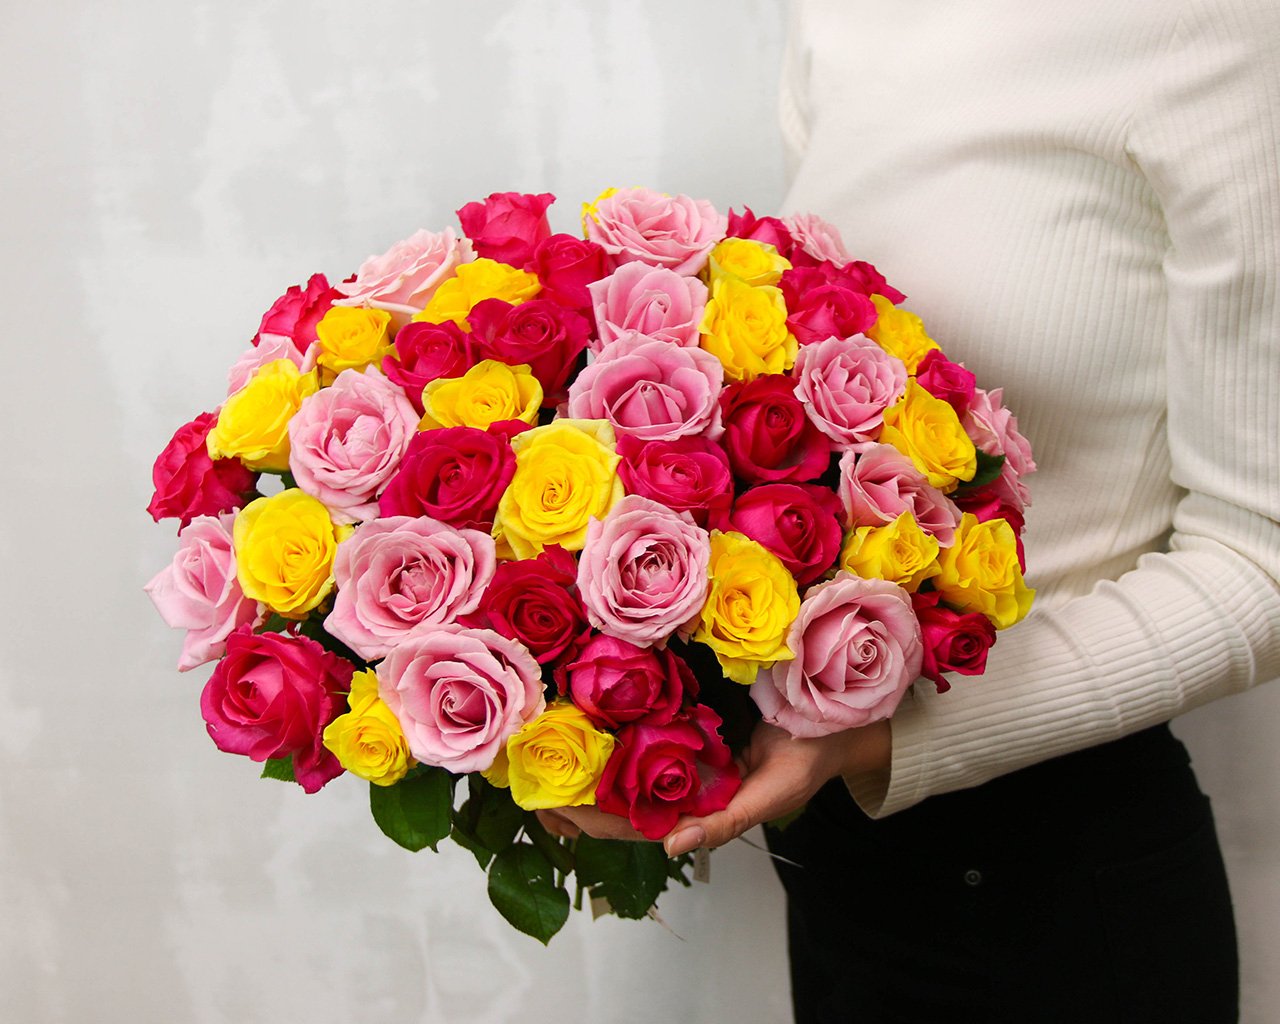 Букет из 51 розы яркий микс 40 см (Россия) под атласную ленту - купить поцене 3839 ₽ с доставкой, Санкт-Петербург